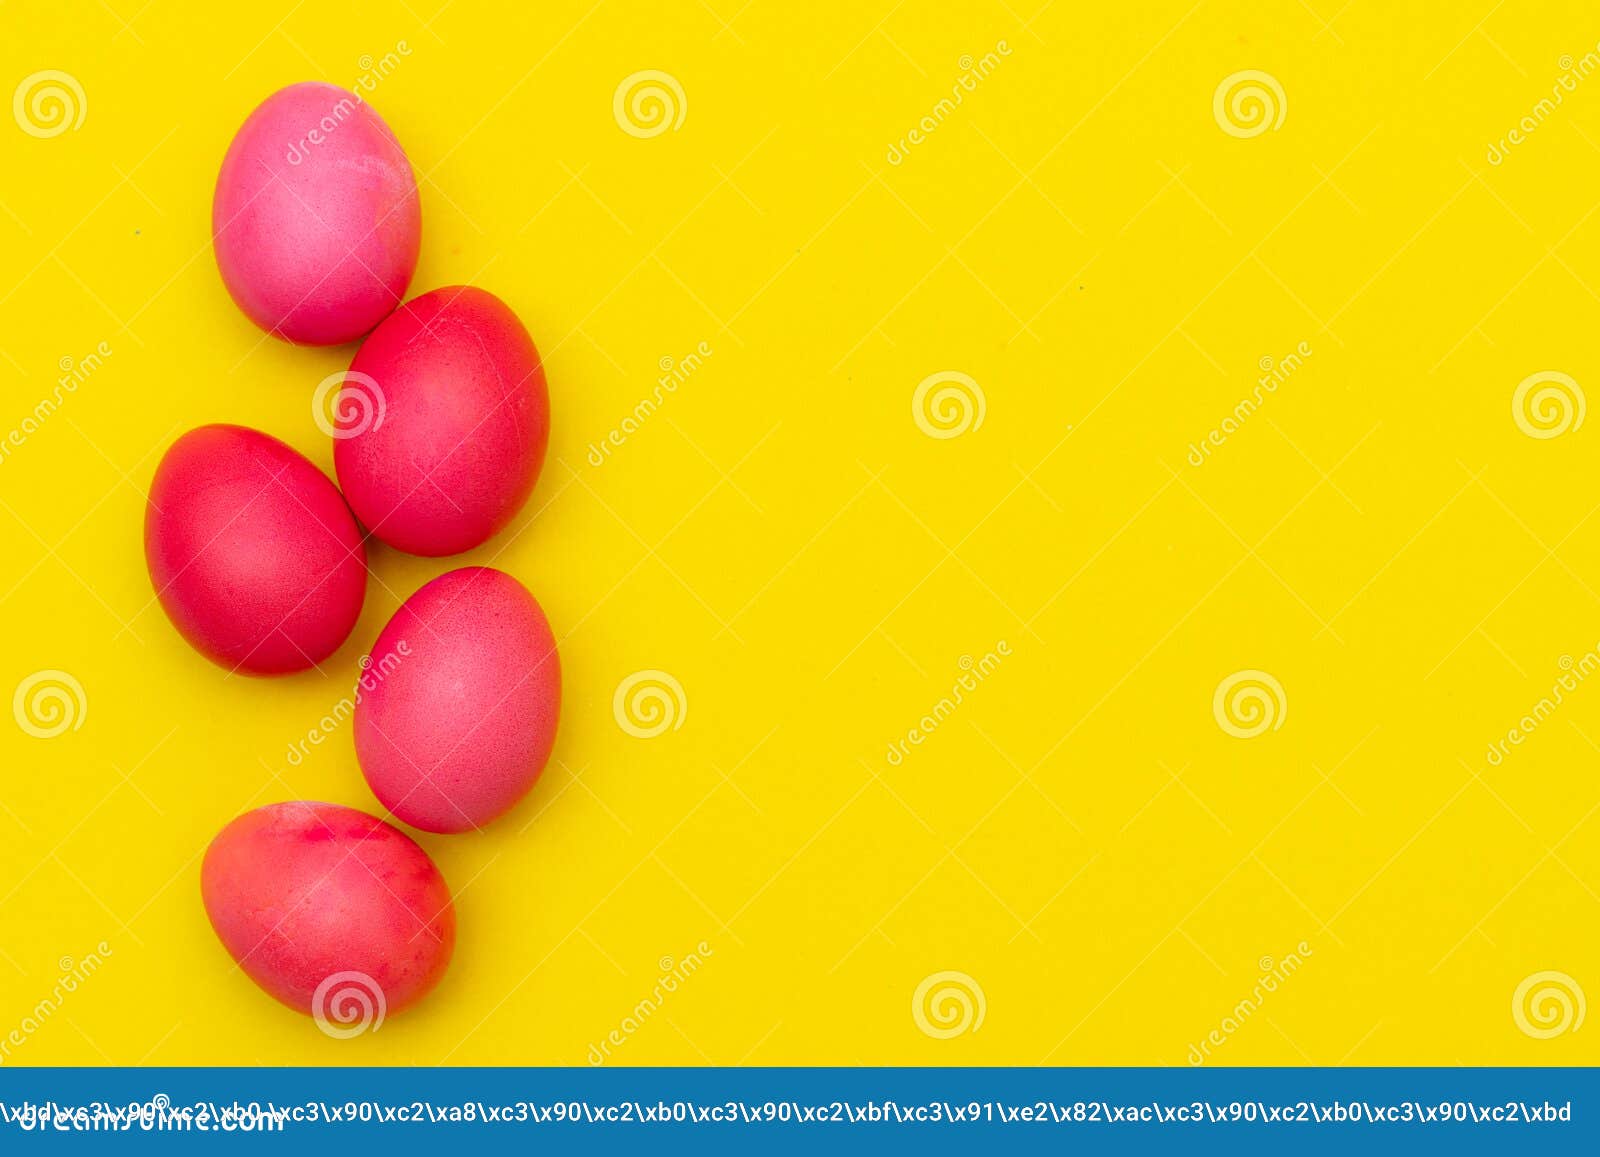 Цветные Яйца Куриные Фото